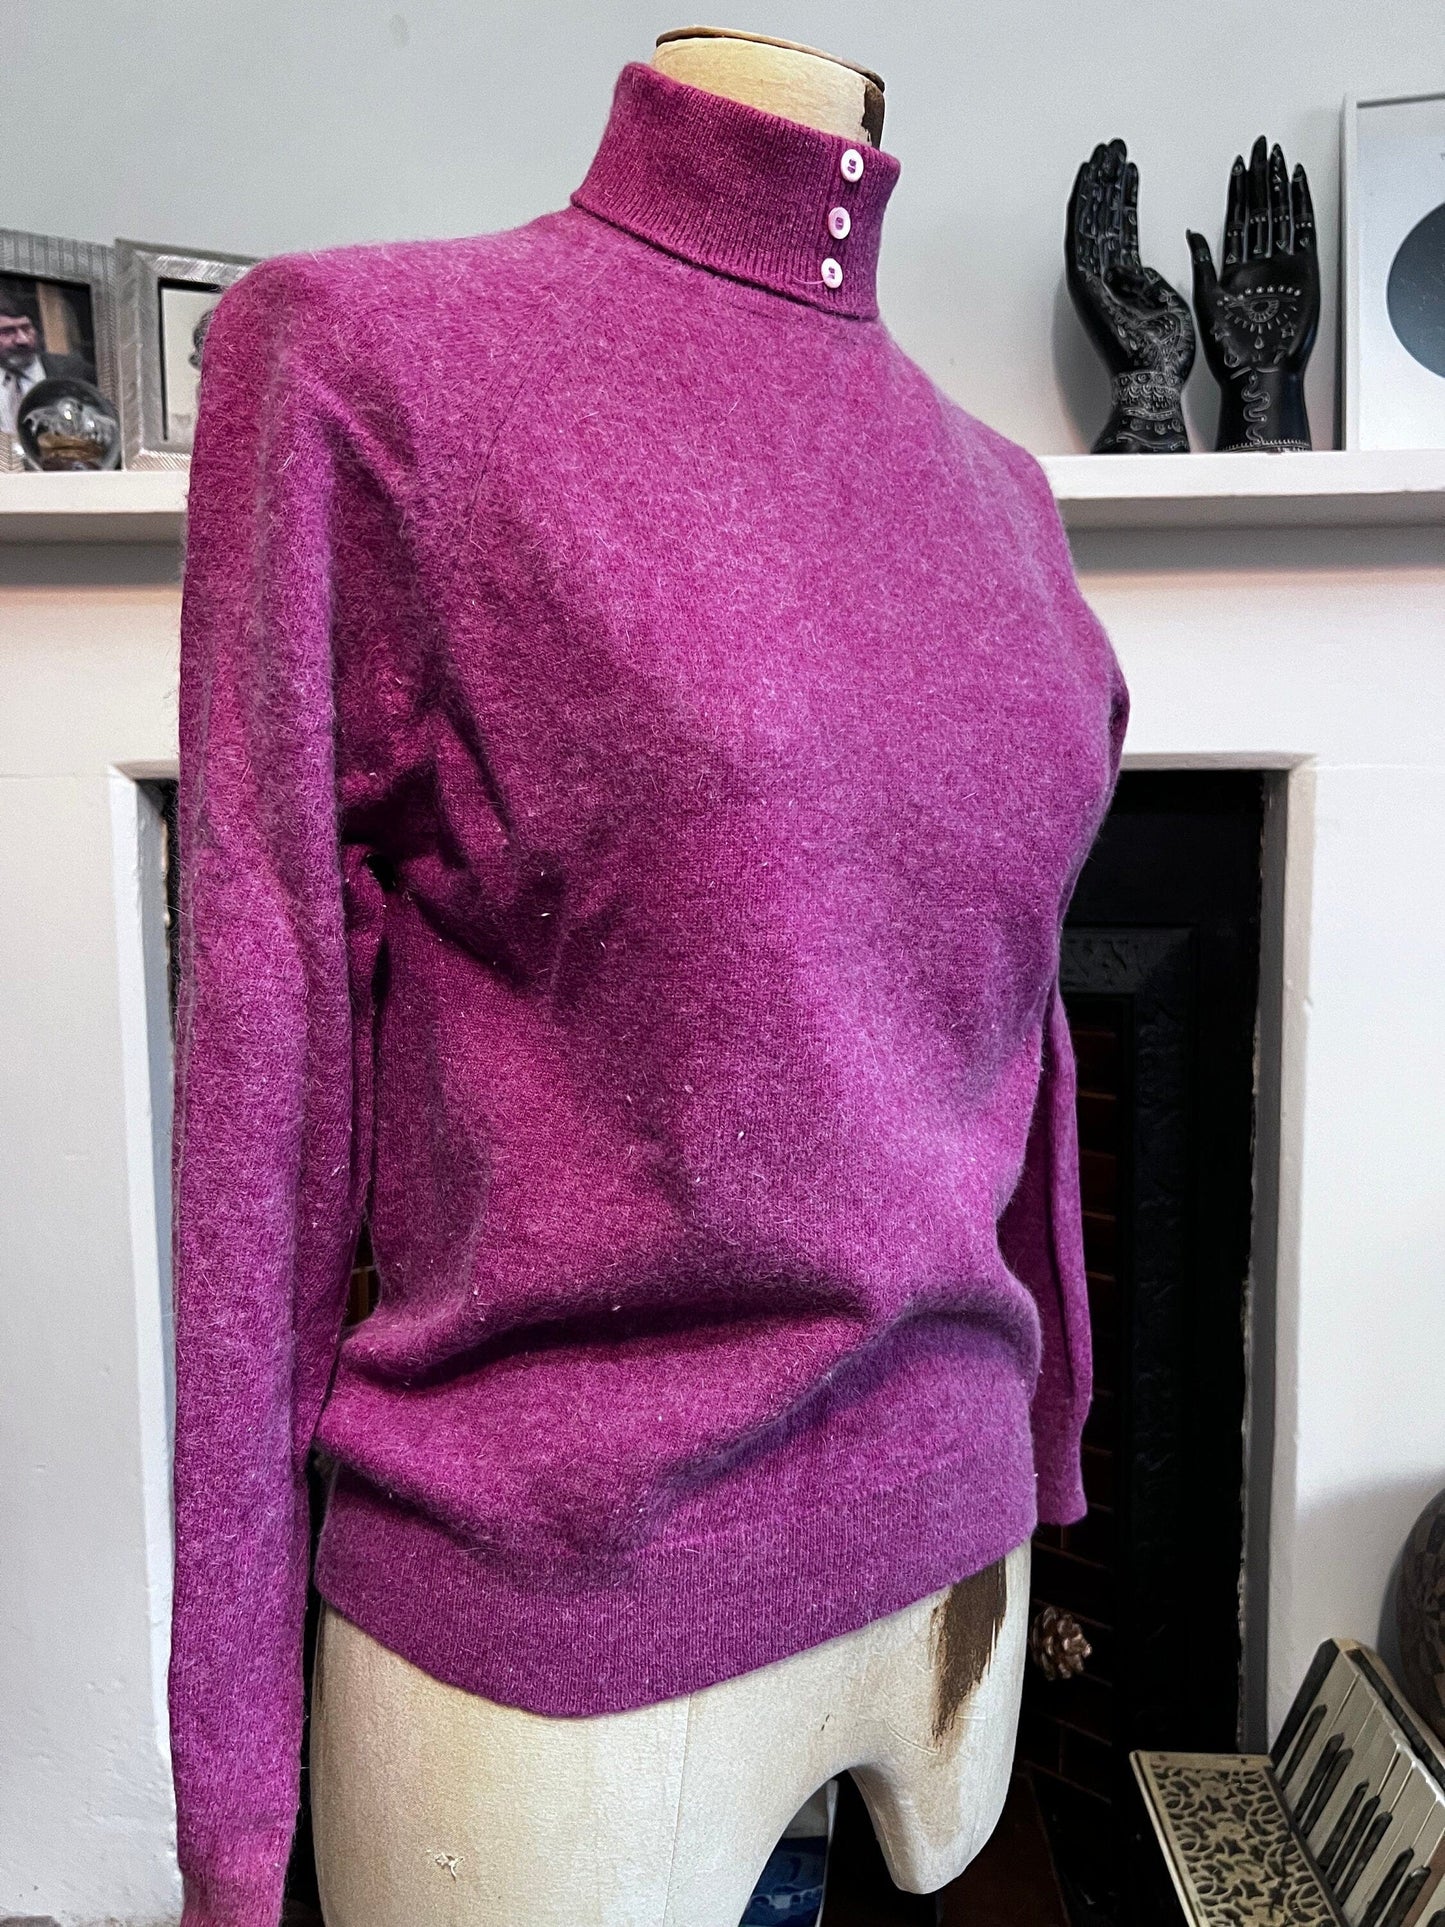 Vintage raspberry pink jumper lambswool jumper pink jumper, vintage knitwear, vintage pullover, vintage jumper, 1950s, vintage knitwear ango